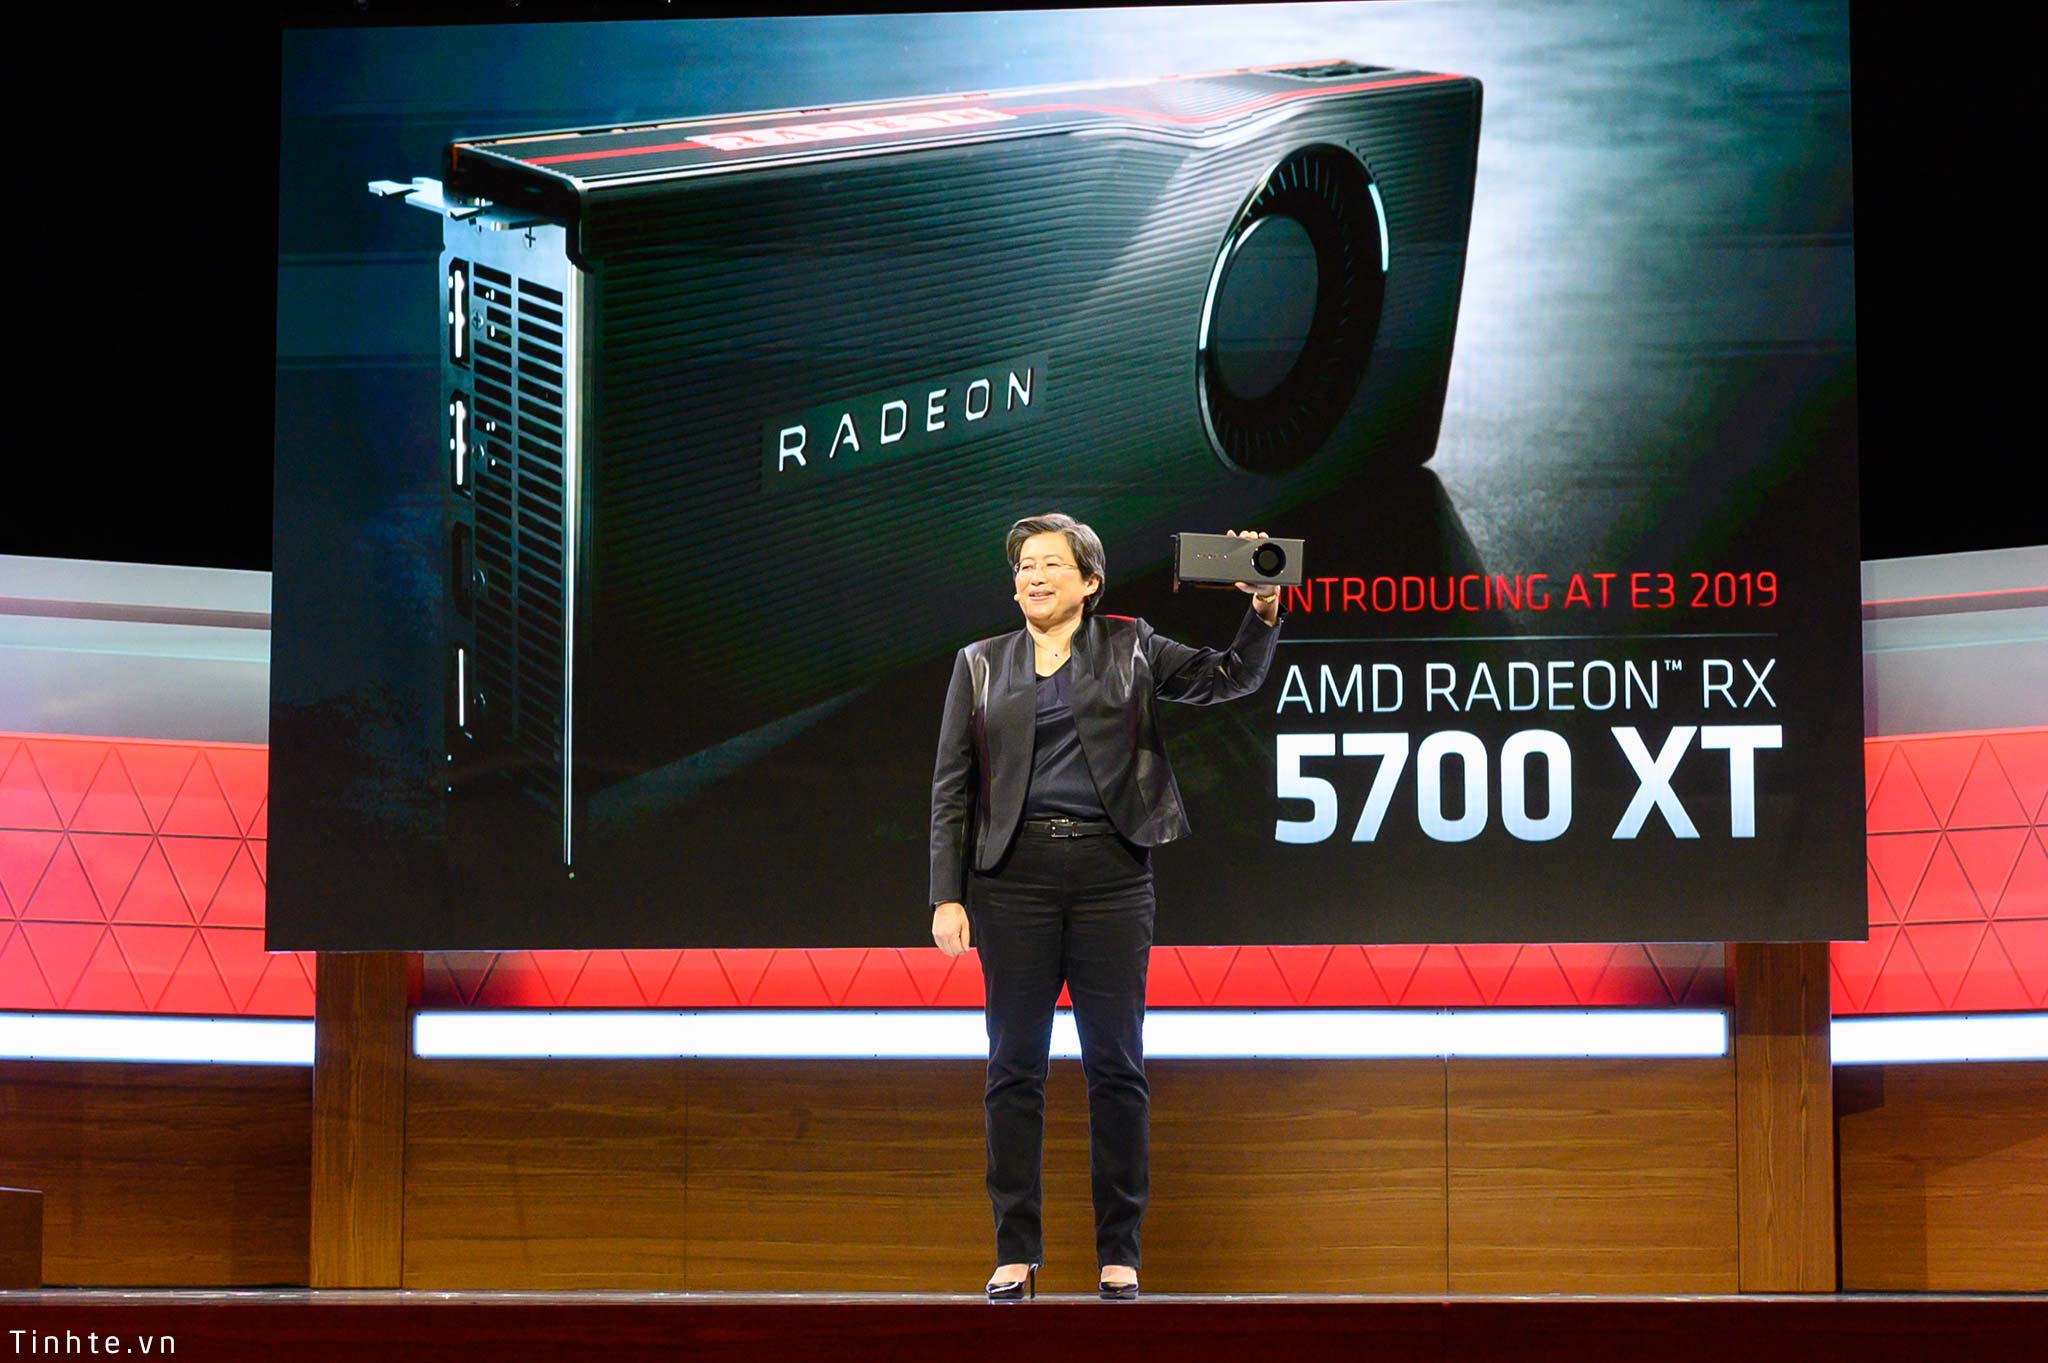 AMD_Radeon_RX_5700_XT_tinhte_7.jpg